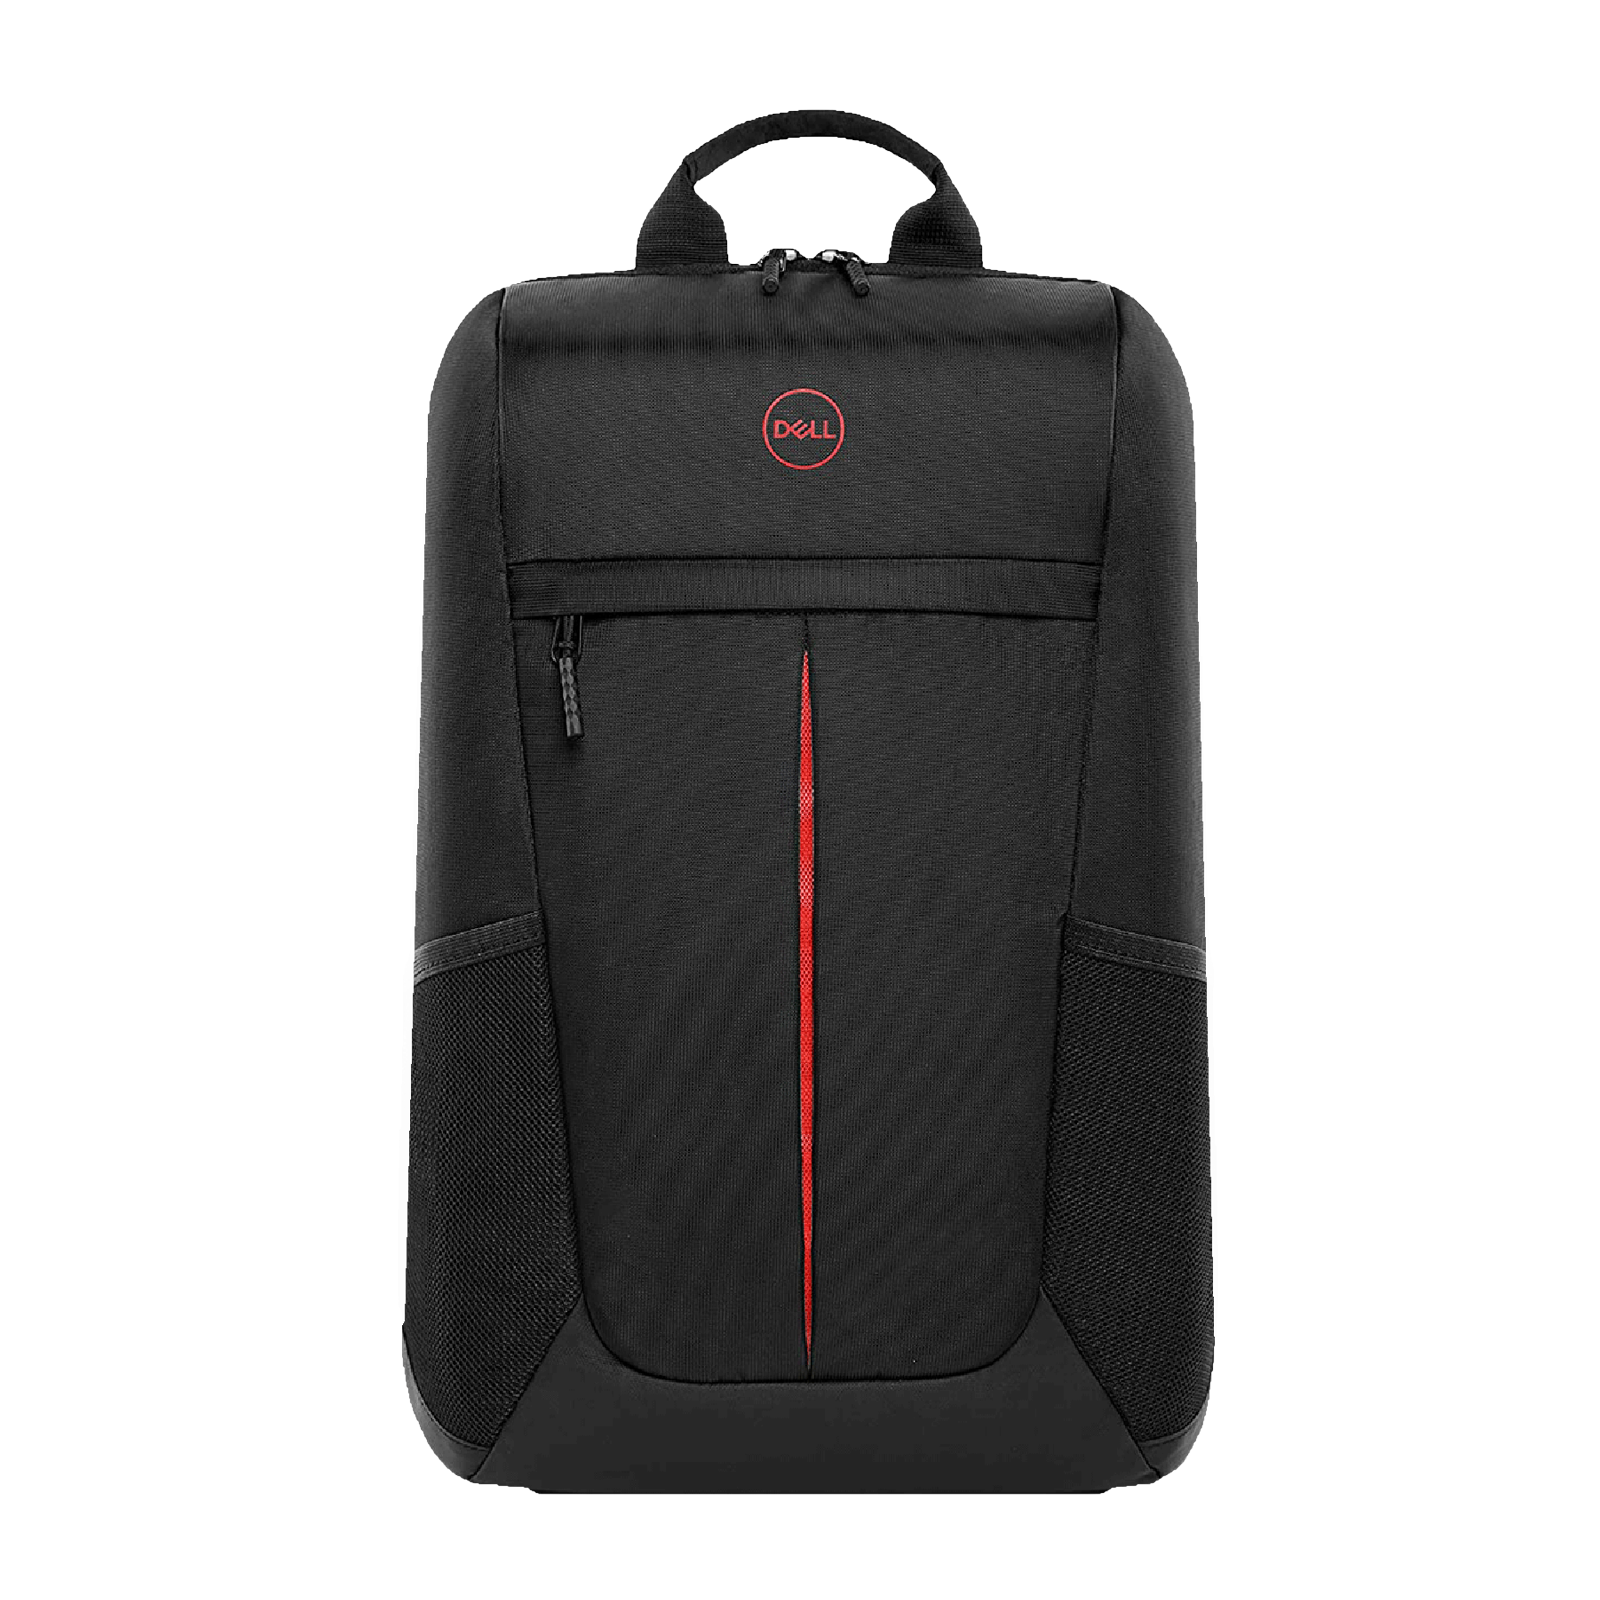 Details 84+ laptop bag for 17 laptop best - in.duhocakina